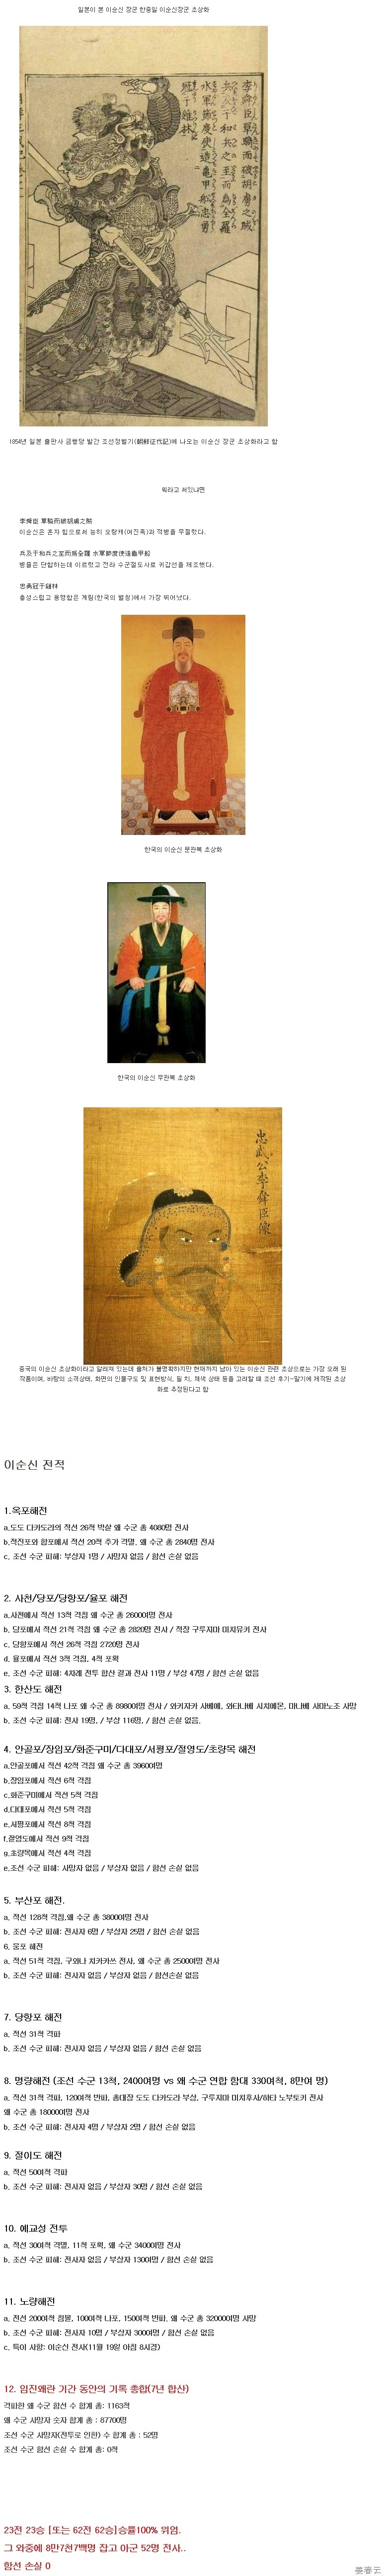 한국, 일본, 중국이 그린 이순신장군 초상화 - 중국, 일본의 초상화는 우리나라가 그린 초상화 보다 용맹스러워